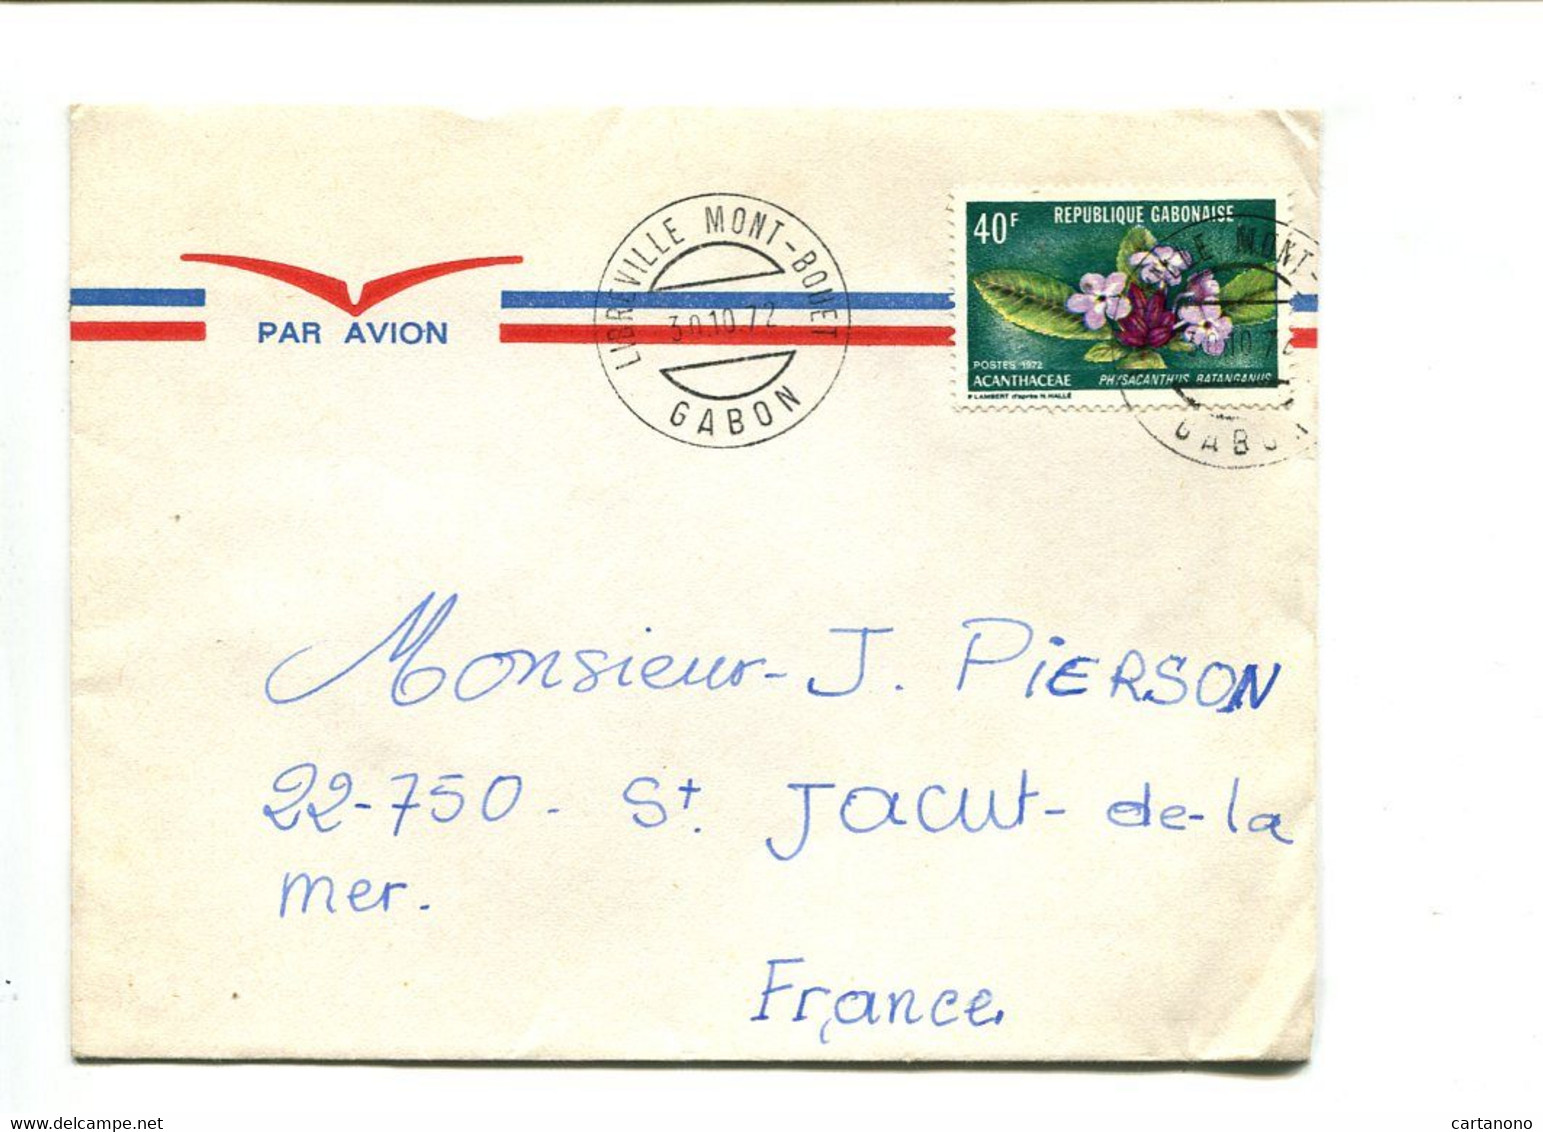 GABON Libreville Mont Bouet 1975  - Affranchissement Seul Sur Lettre Par Avion - Fleur - Gabon (1960-...)